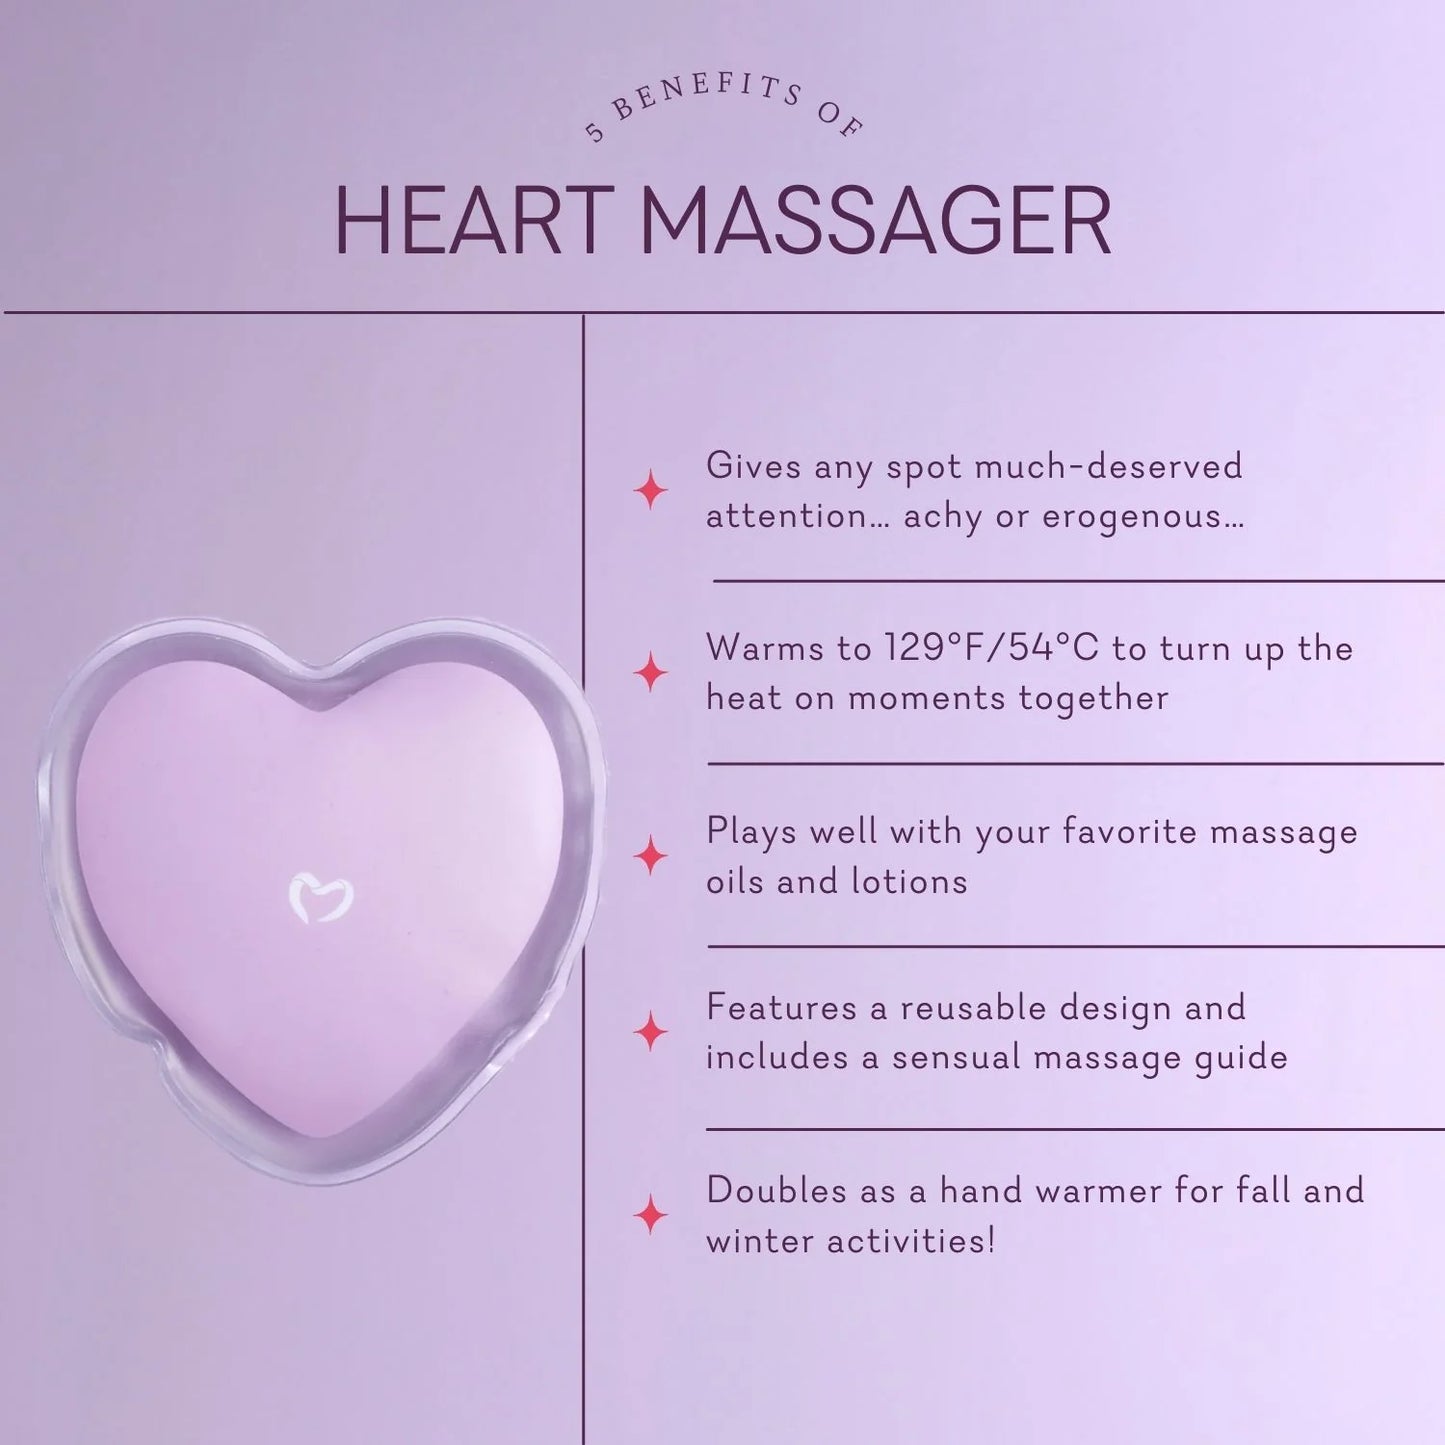 Heart Massager New Color Violet | Corazón Pure Romance Nuevo Color Violeta